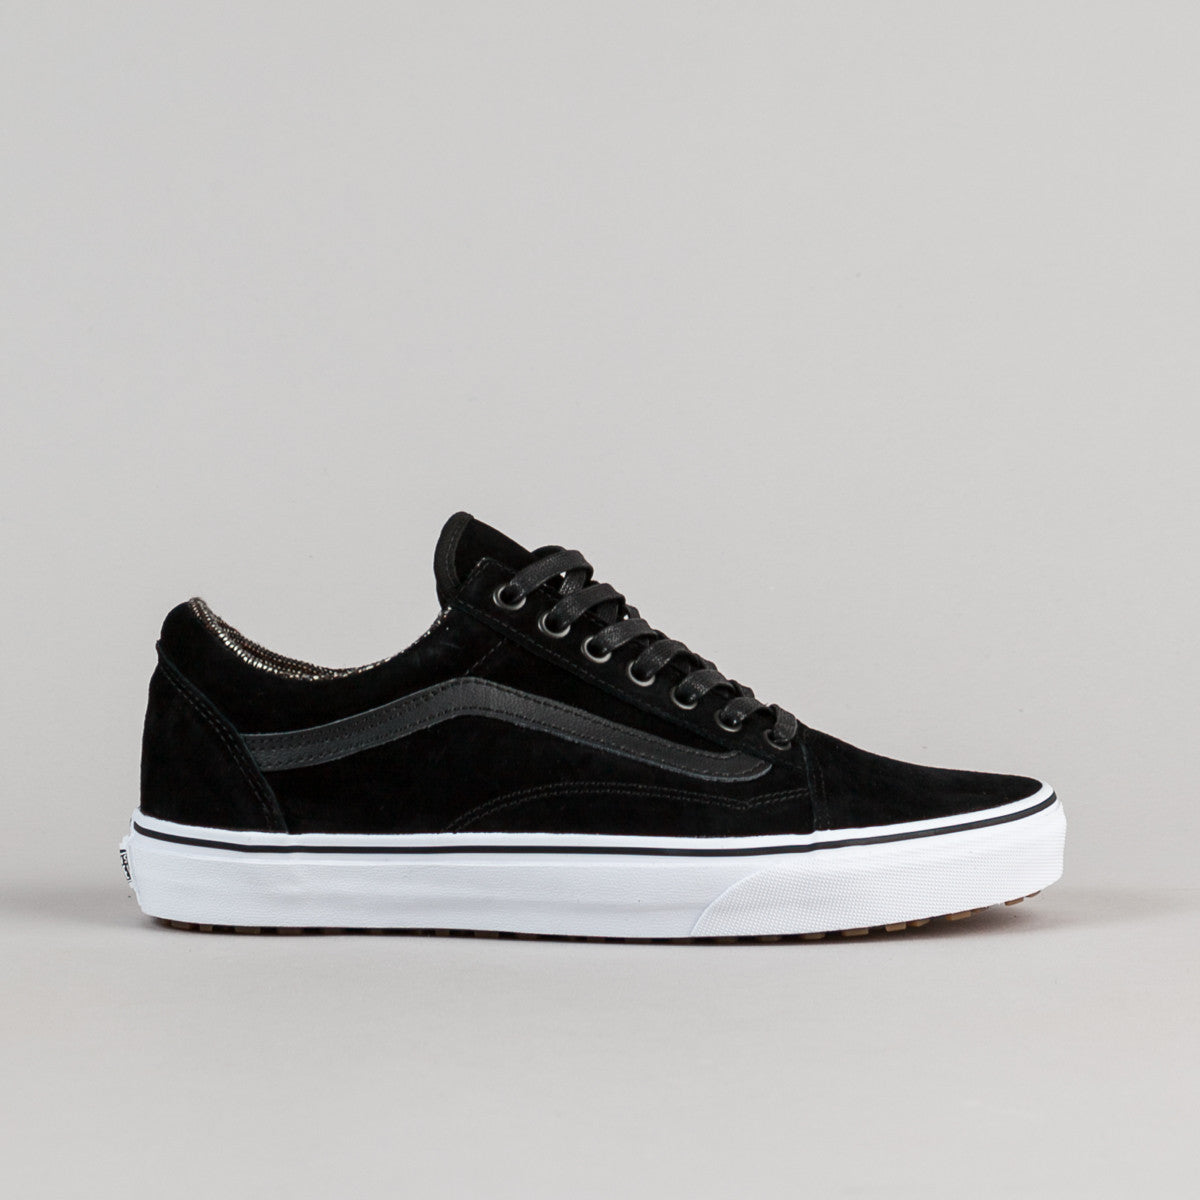 Vans Old Skool MTE Shoes - Black / Tweed | Flatspot